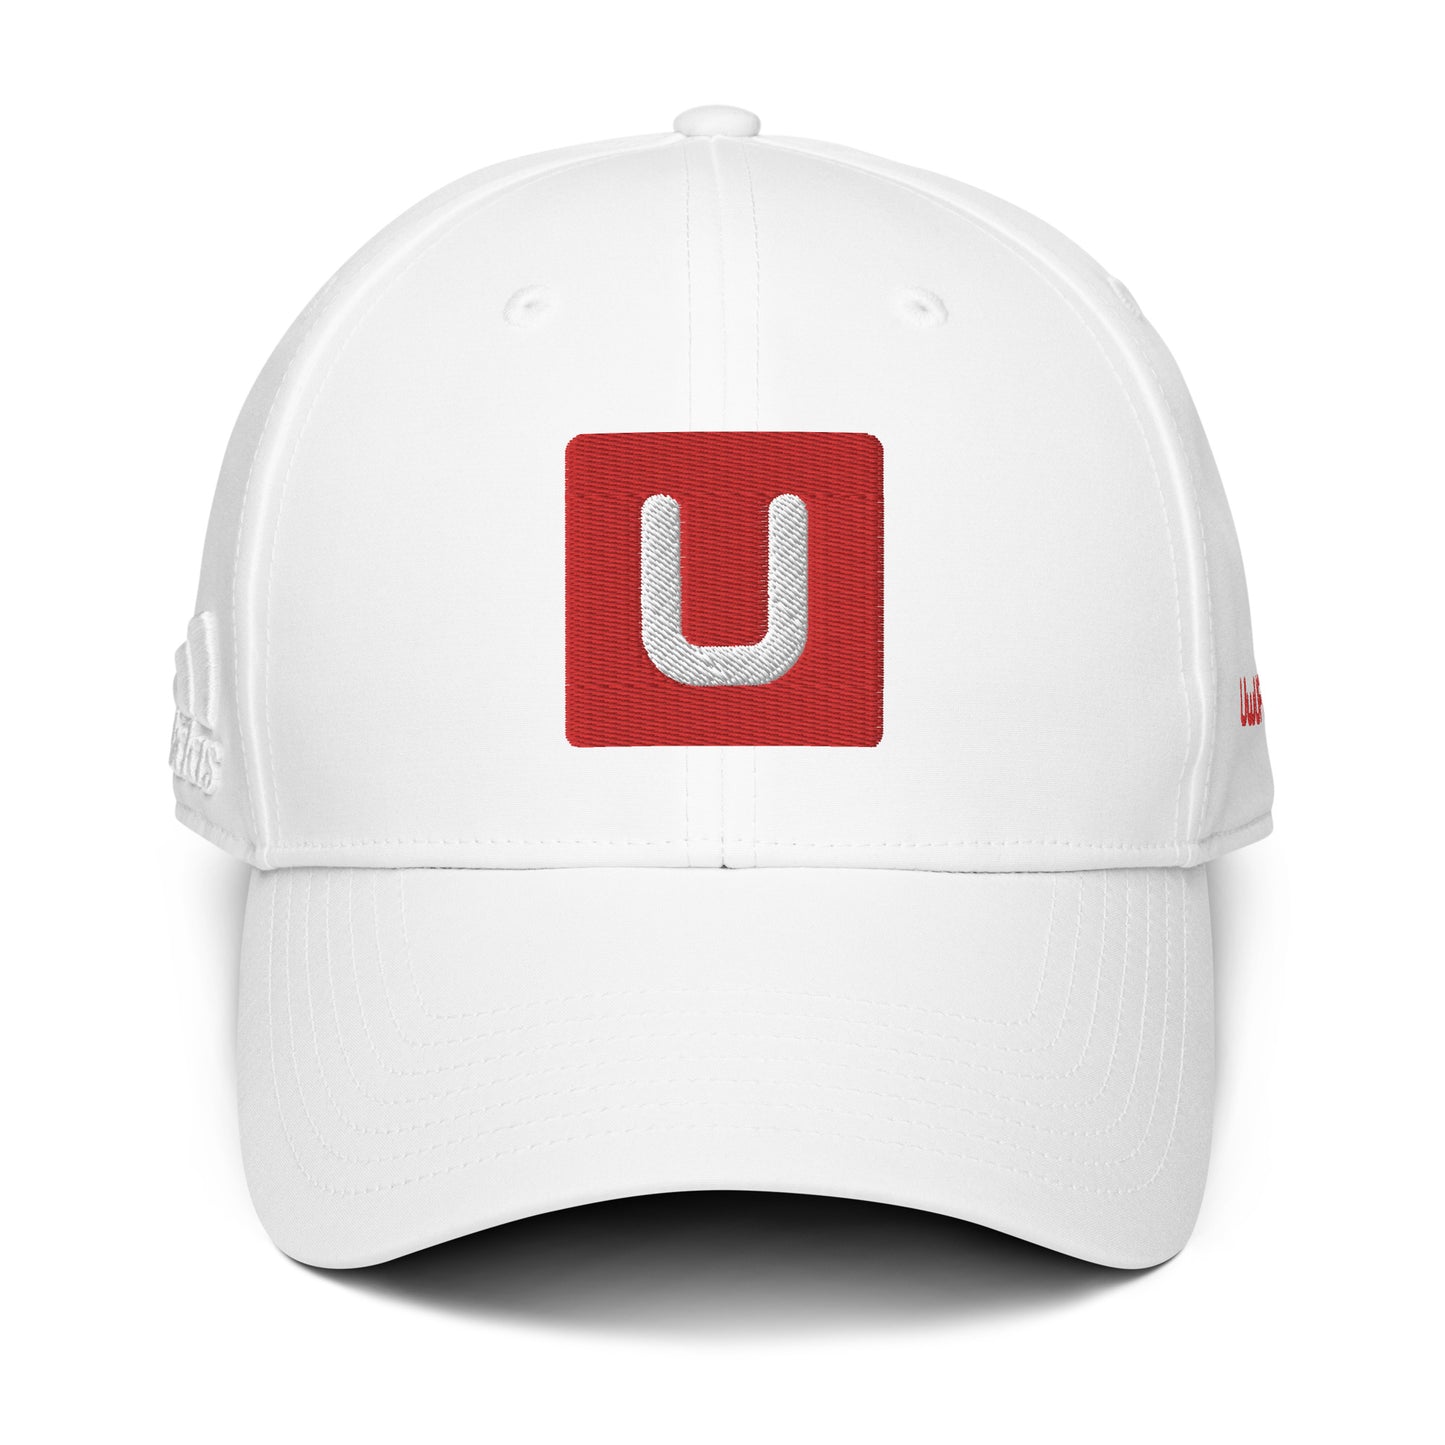 UwUFUFU Logo adidas dad hat